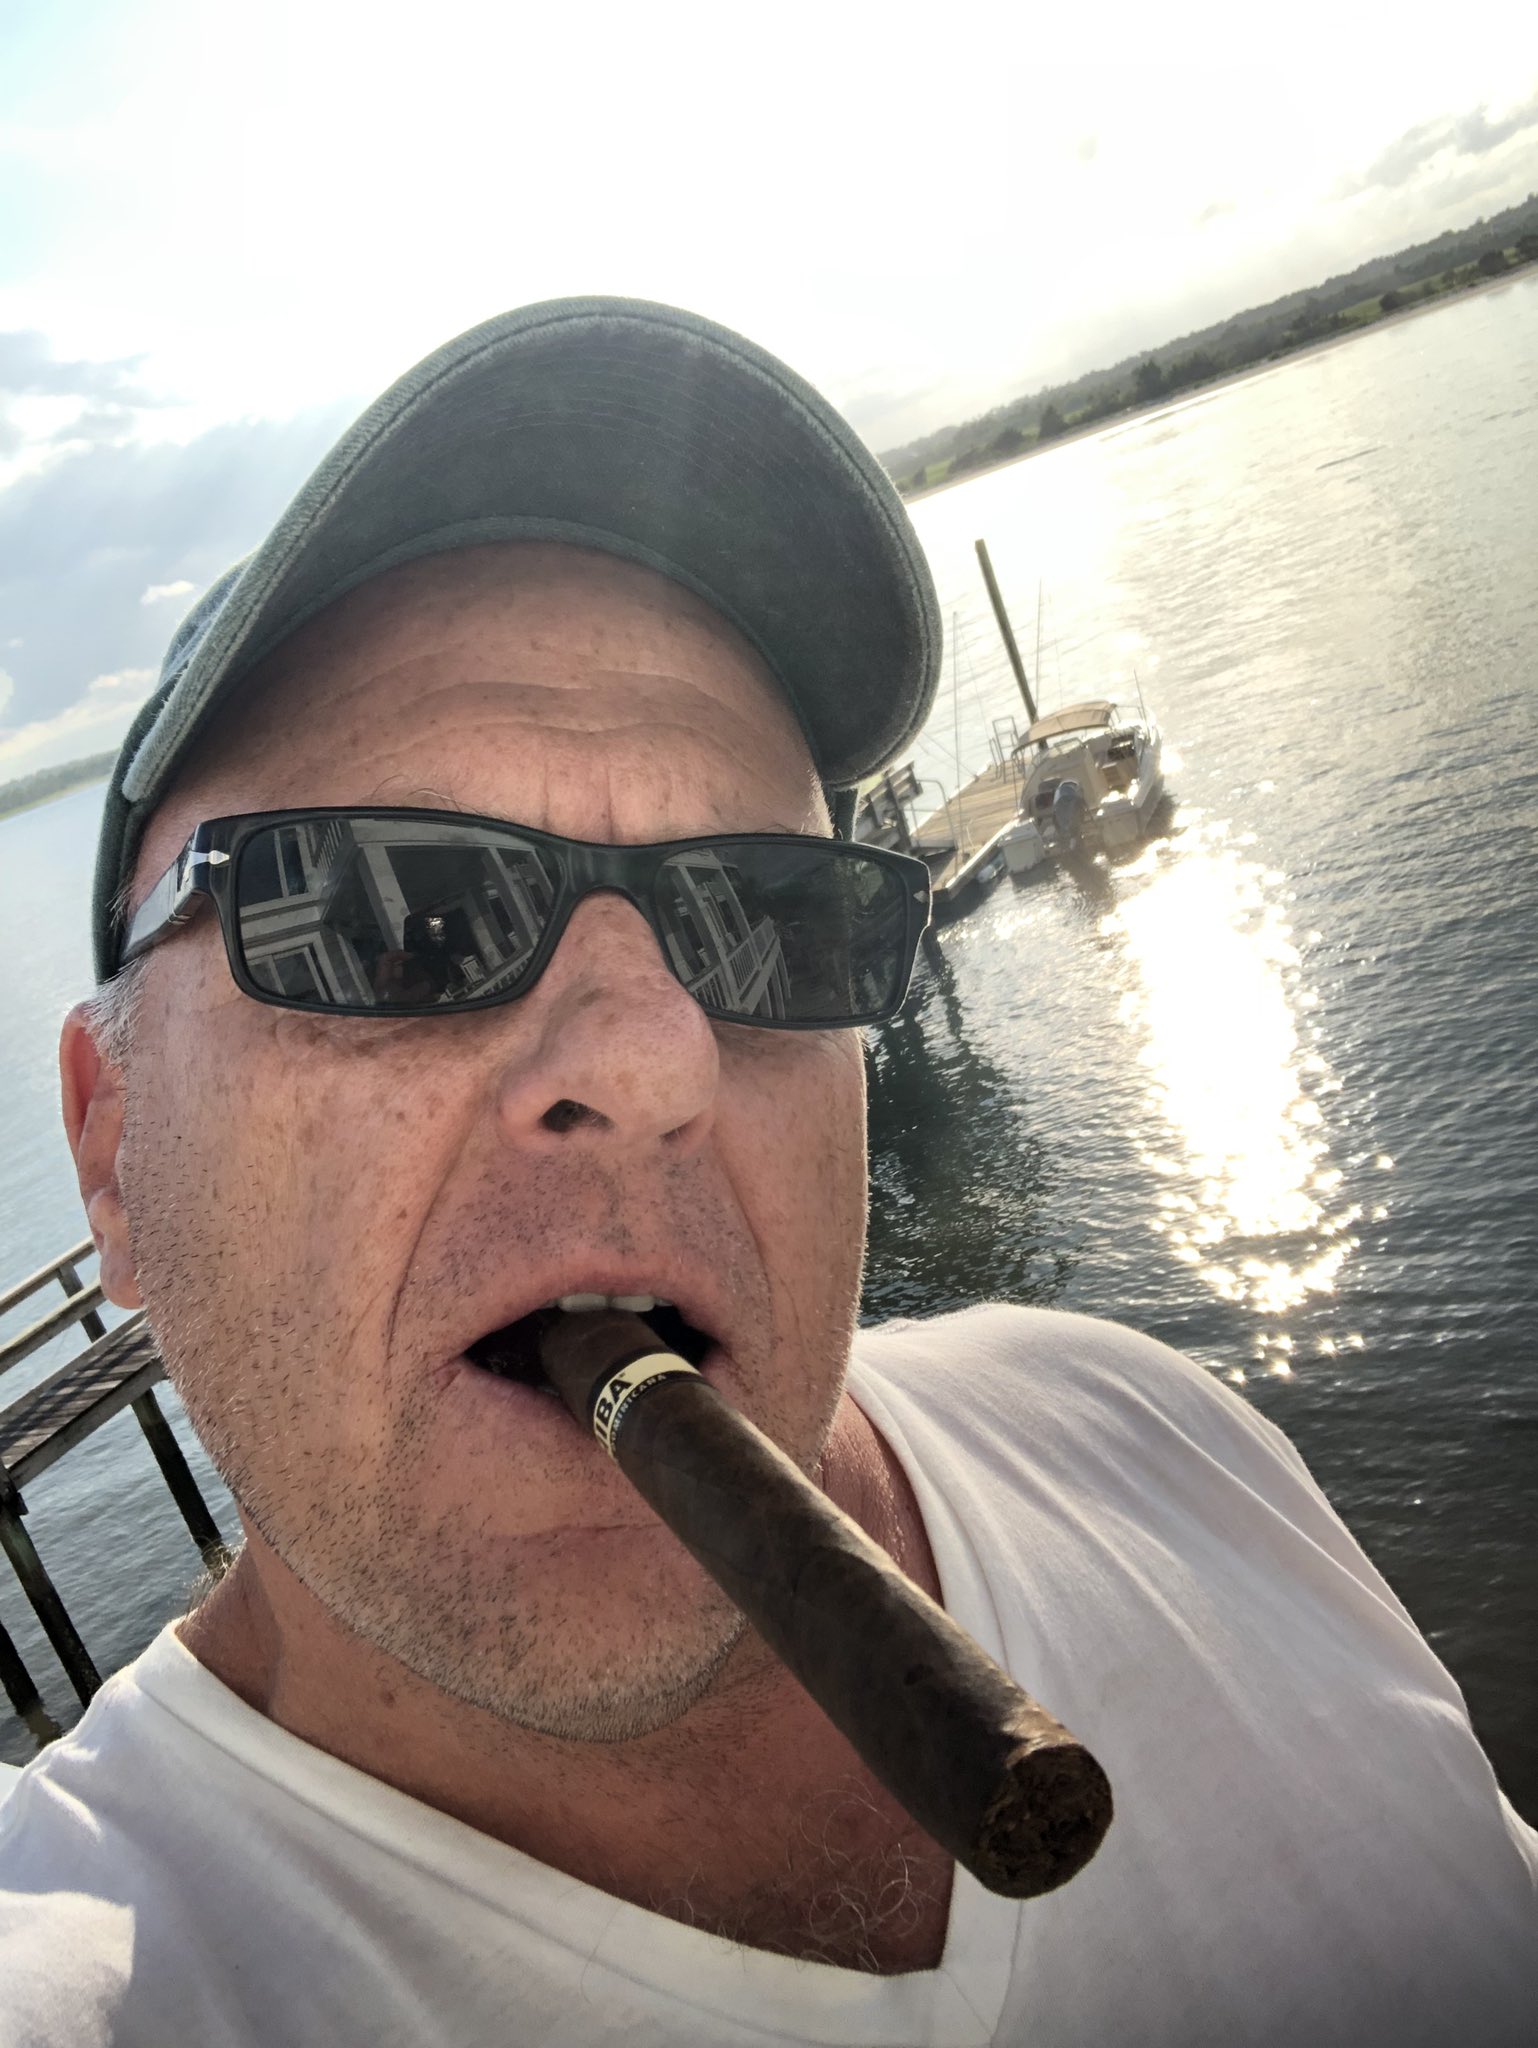 Dean Norris raucht einer Zigarette (oder Cannabis)
